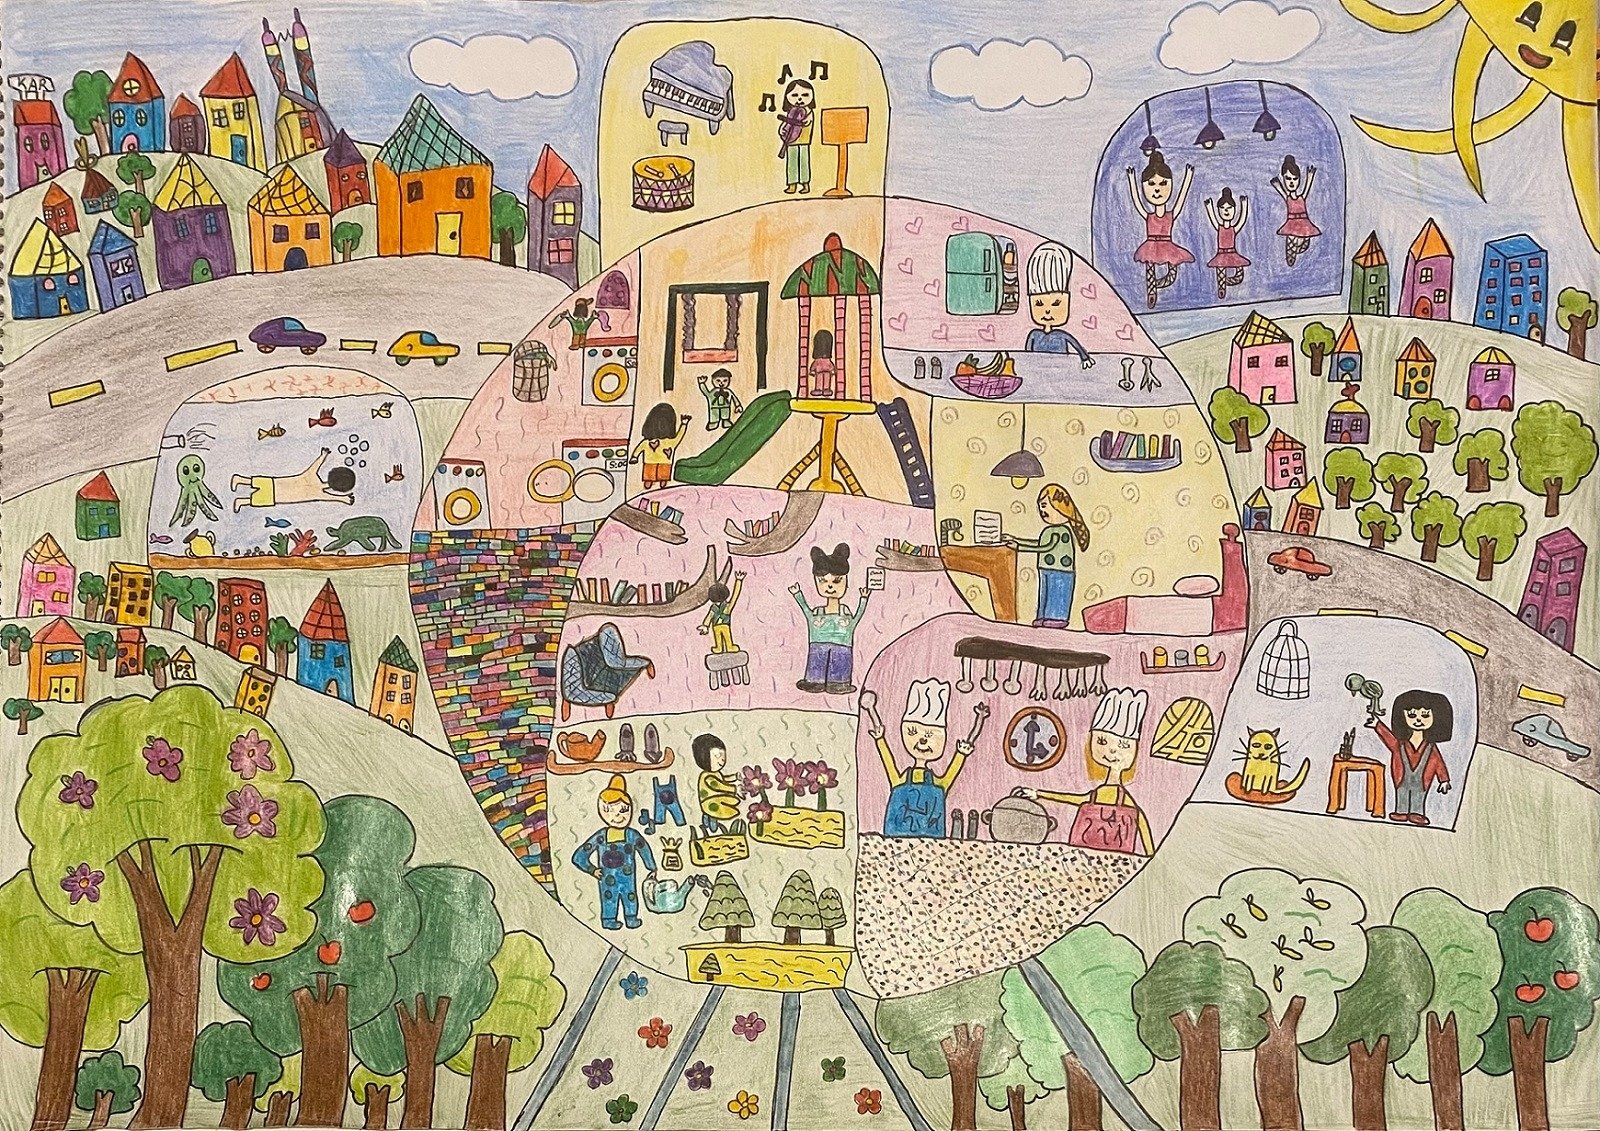 Sebuah lukisan dikirimkan sebagai bagian dari Kontes Melukis Anak-anak Internasional Pınar ke-41.  (Courtesy of Pınar International Children's Painting Contest)